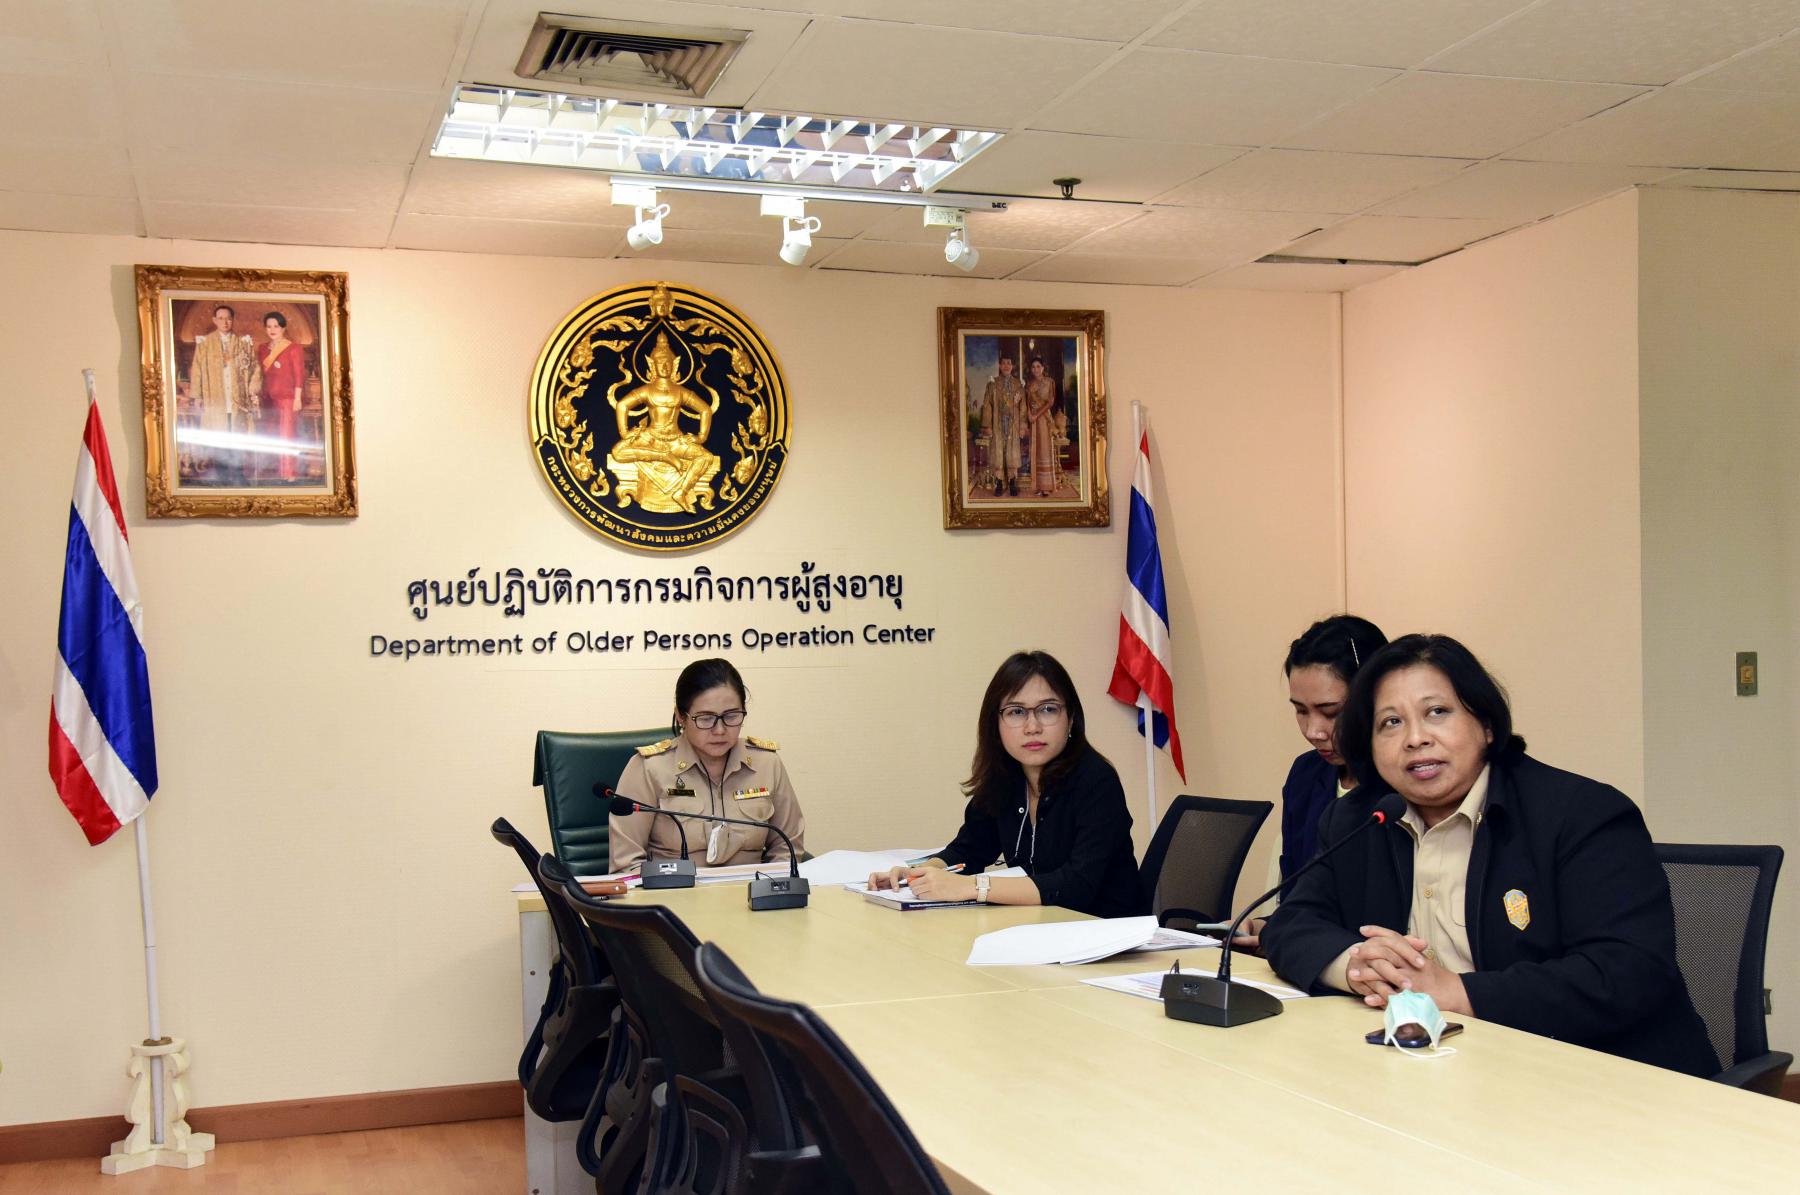 กฎหมายที่เกี่ยวข้องในระดับชาติและระดับสากล และการนำไปใช้เพื่อการพัฒนาคุณภาพชีวิตผู้สูงอายุไทย